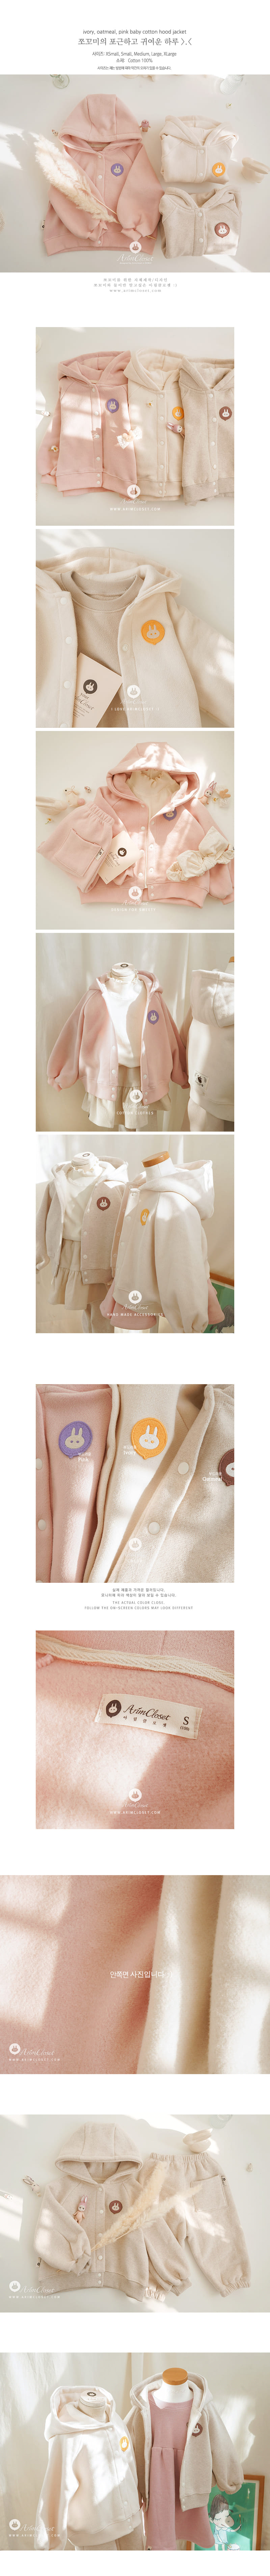 Arim Closet - Korean Baby Fashion - #babyboutiqueclothing - Baby C Hood Jacket 